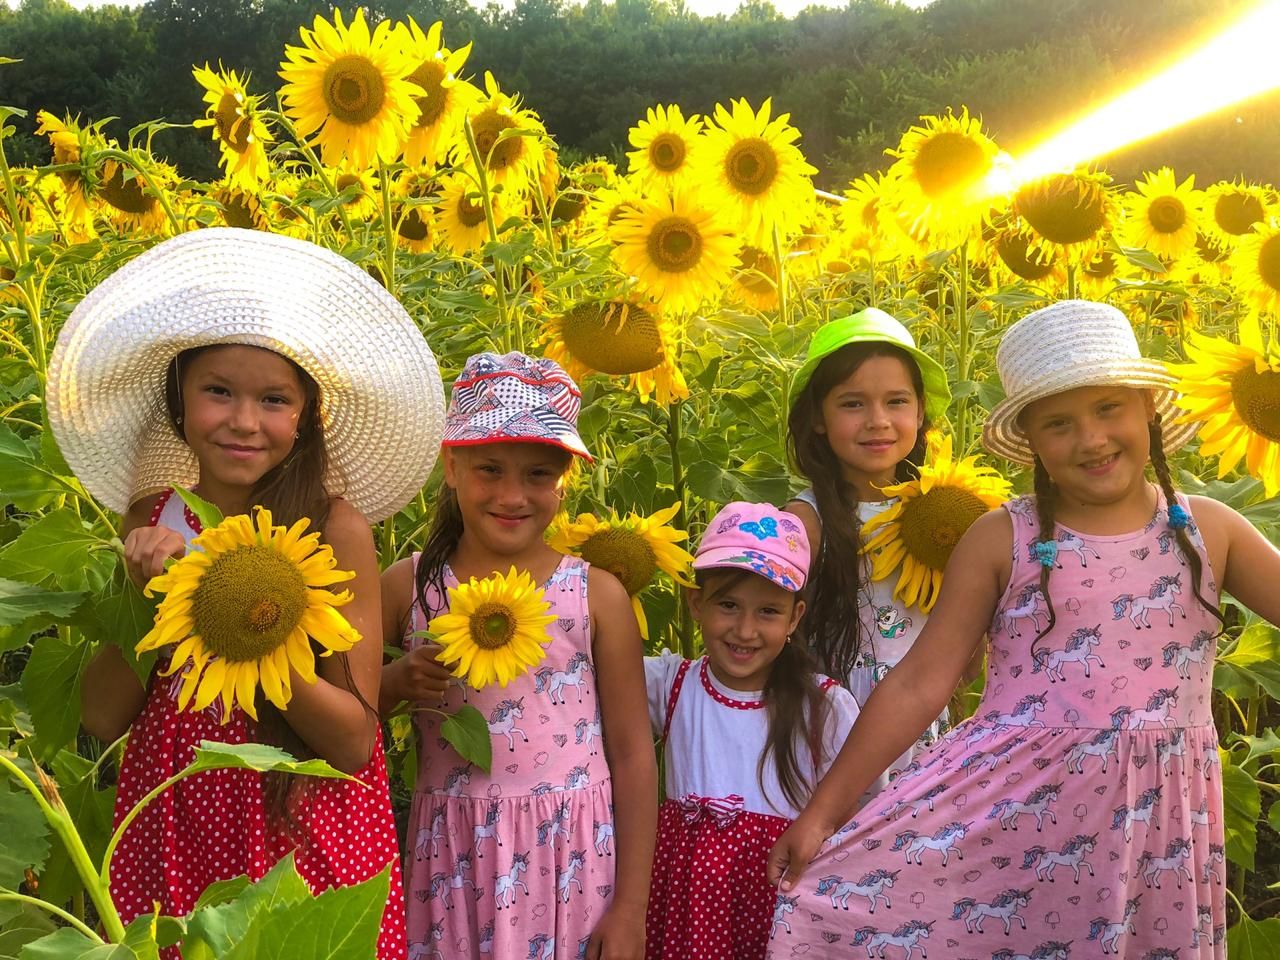 Пять сестричек принимают участие в ярком летнем фотоконкурсе "Панама-мама"